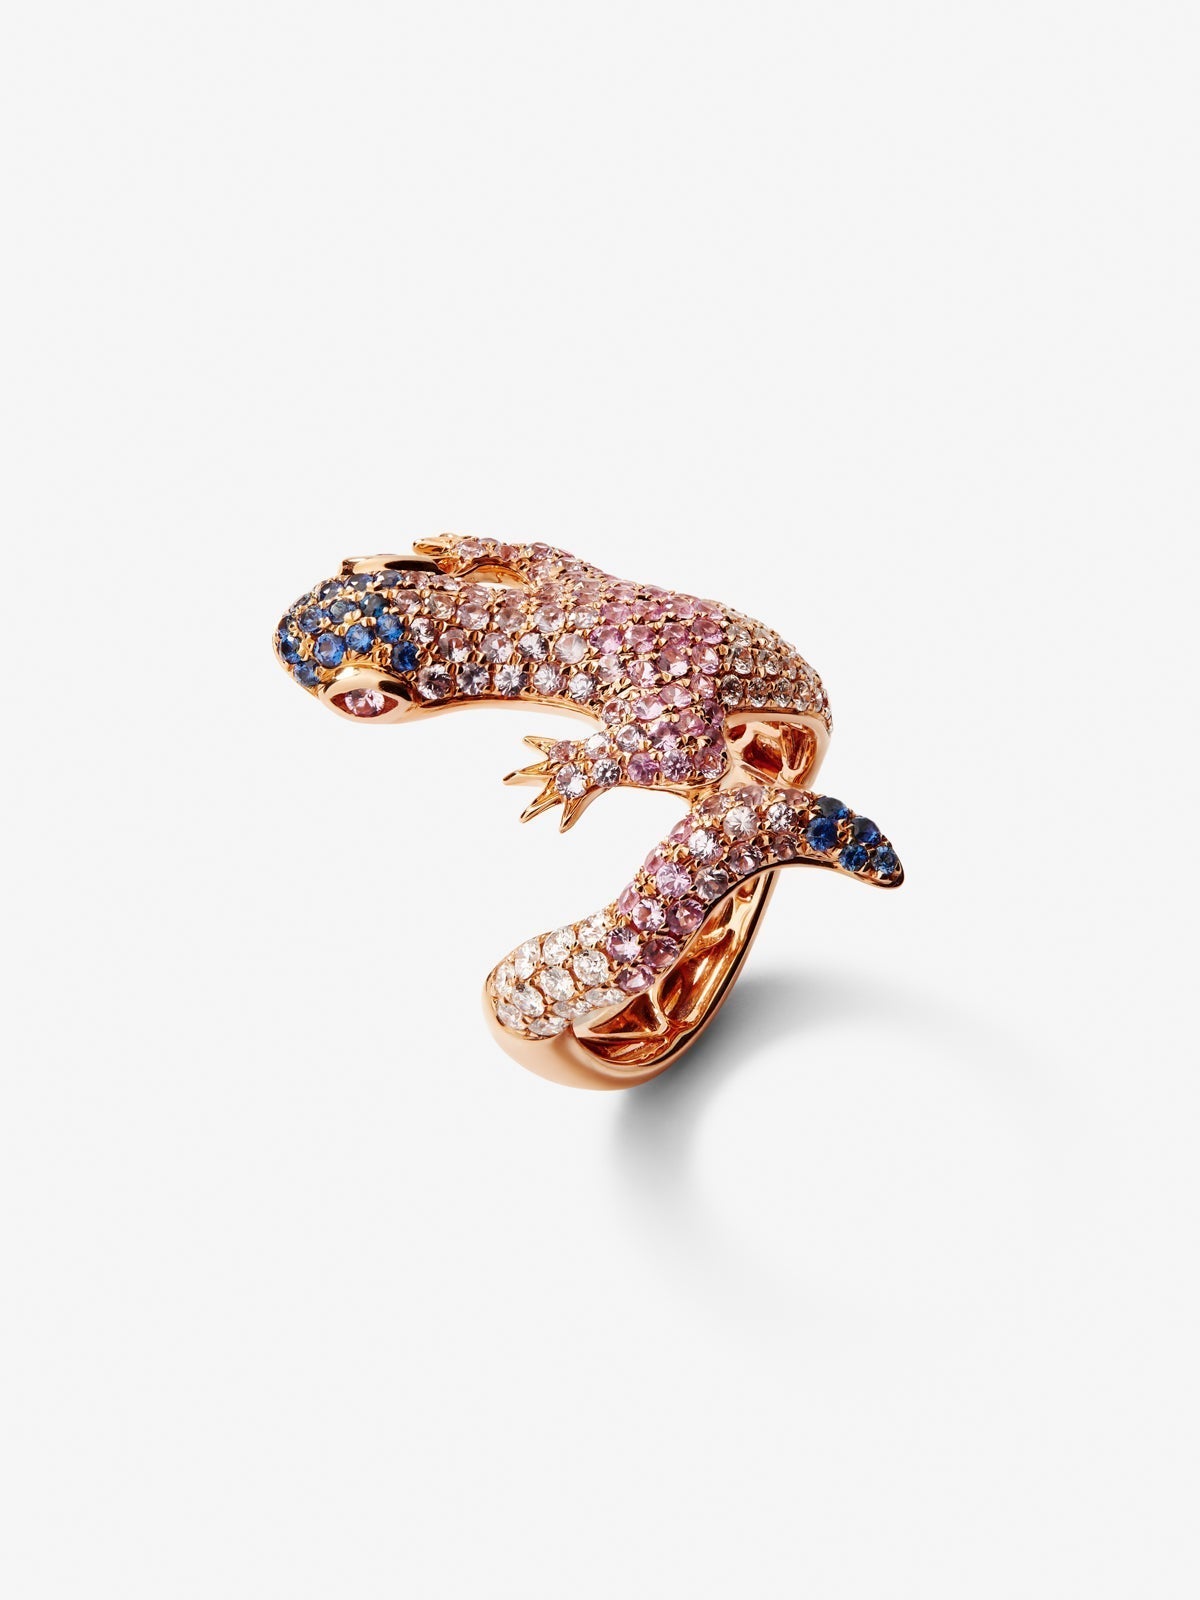 Anillo de oro rosa de 18K con  20 diamantes en talla brillante con un total de 3,3 cts y 160 zafiros multicolor con un total de 2,69 cts con forma de salamandra